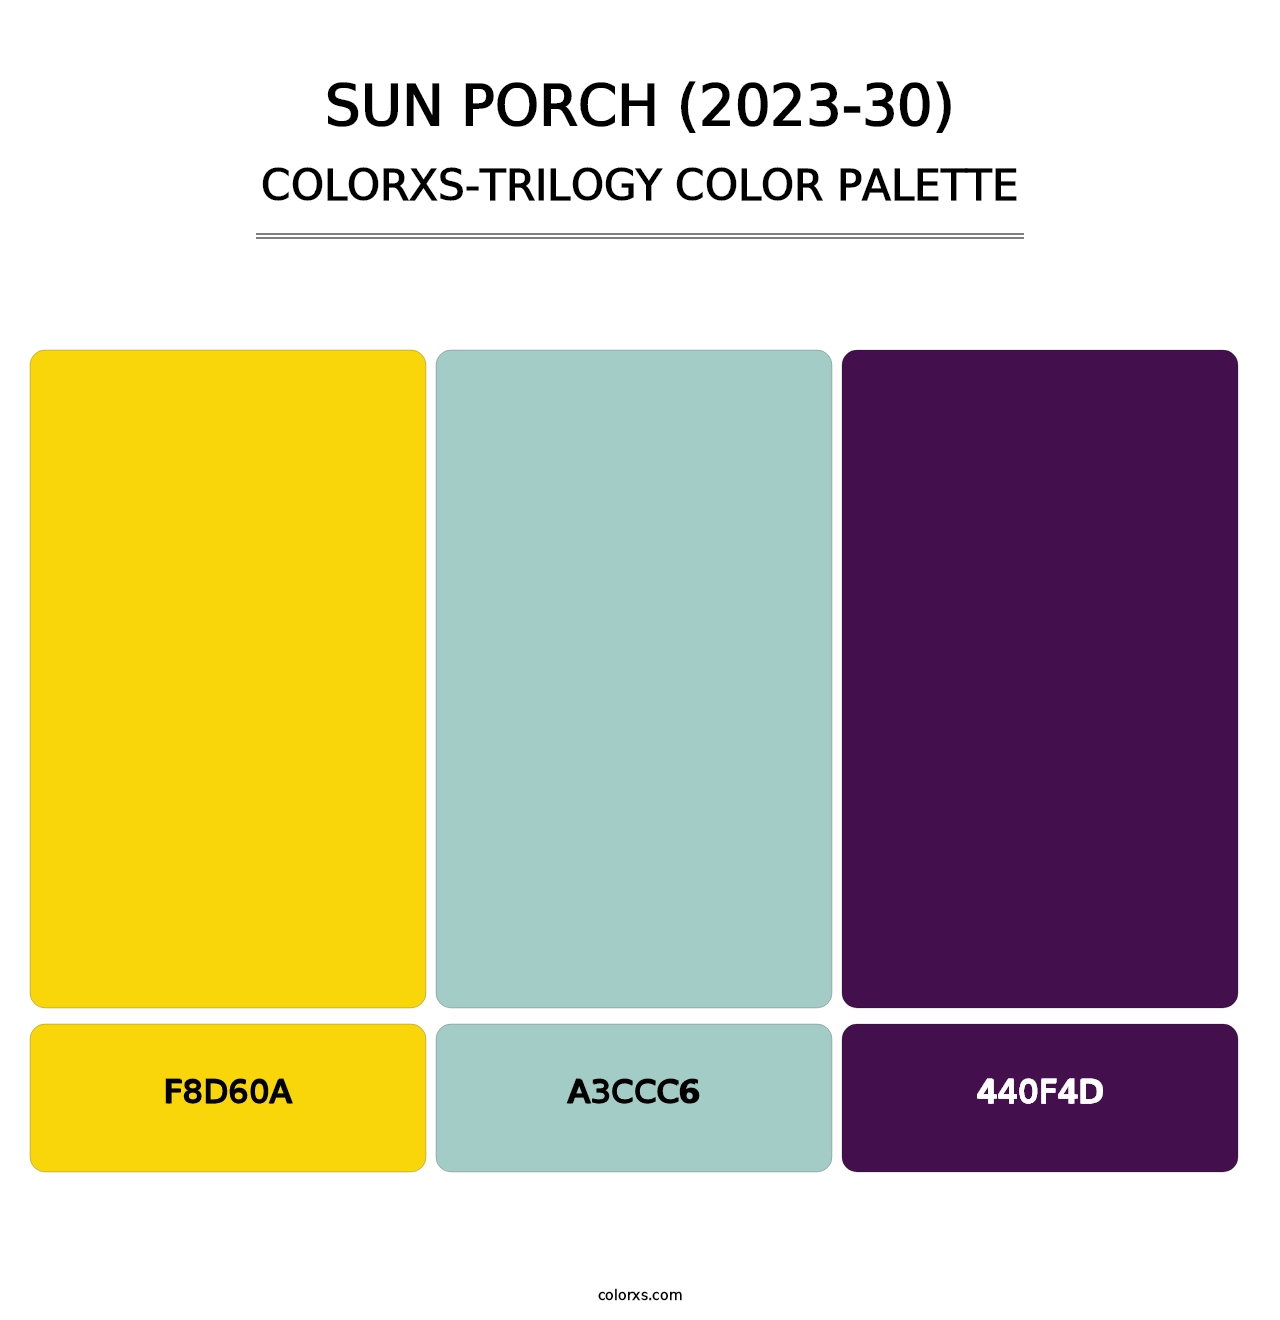 Sun Porch (2023-30) - Colorxs Trilogy Palette